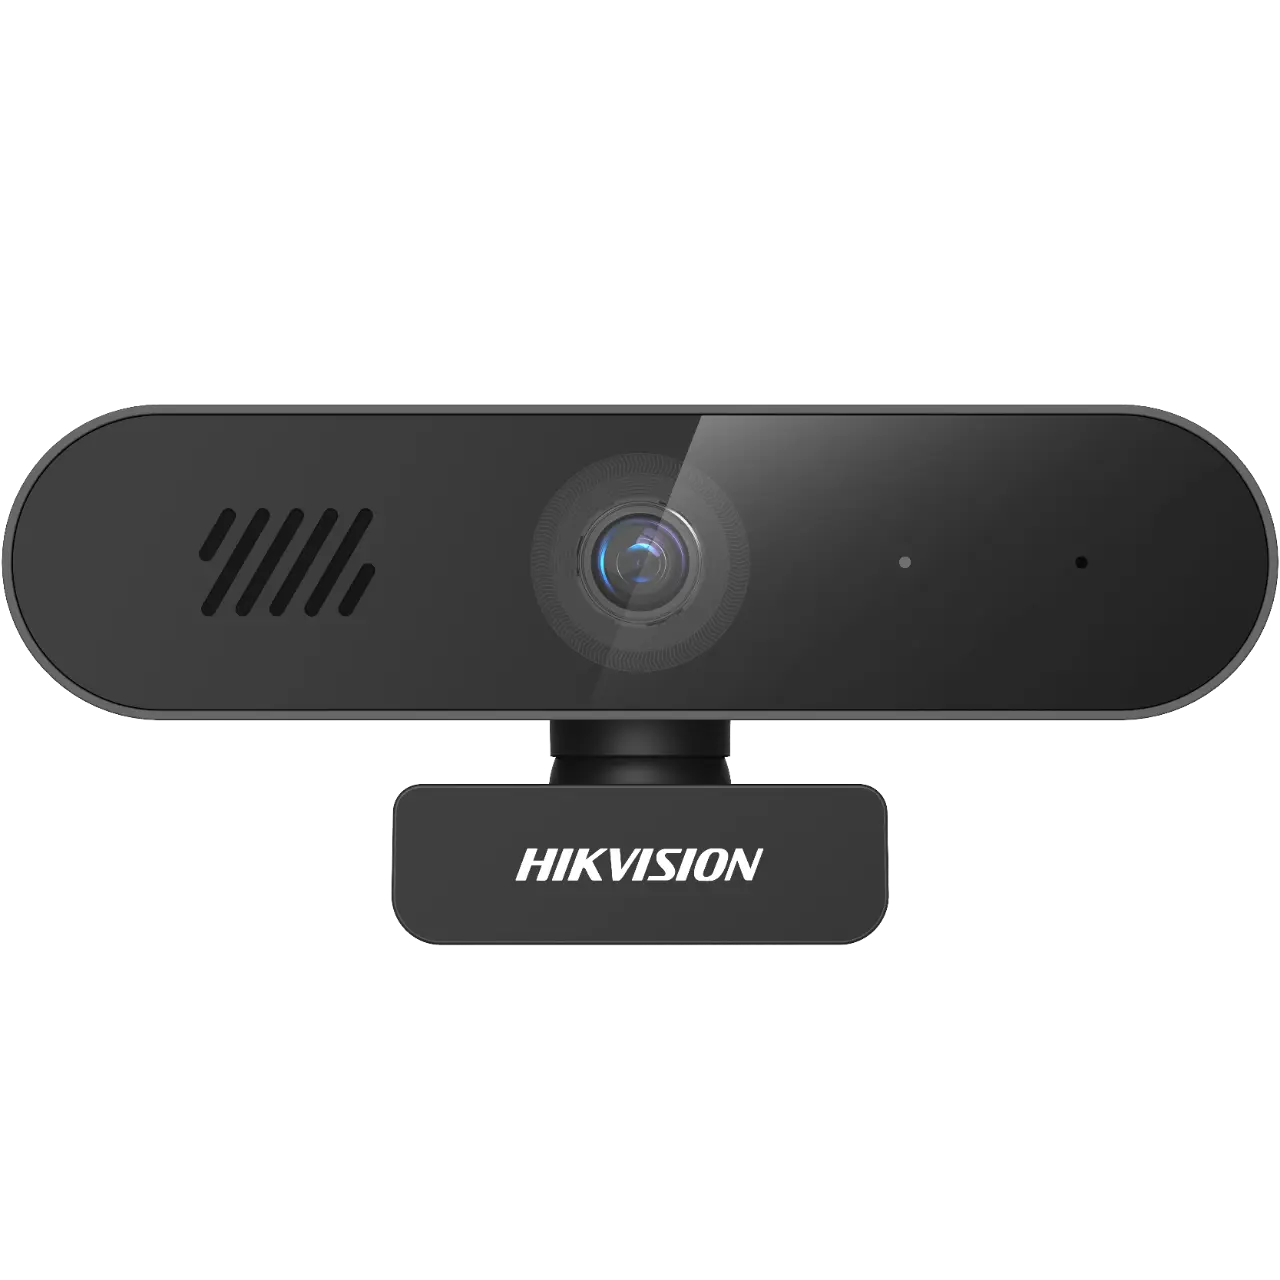 Вебкамера Hikvision DS-UA14, 4 MP, 2560x1440, встроенный микрофон, USB 3.0, черный (DS-UA14)